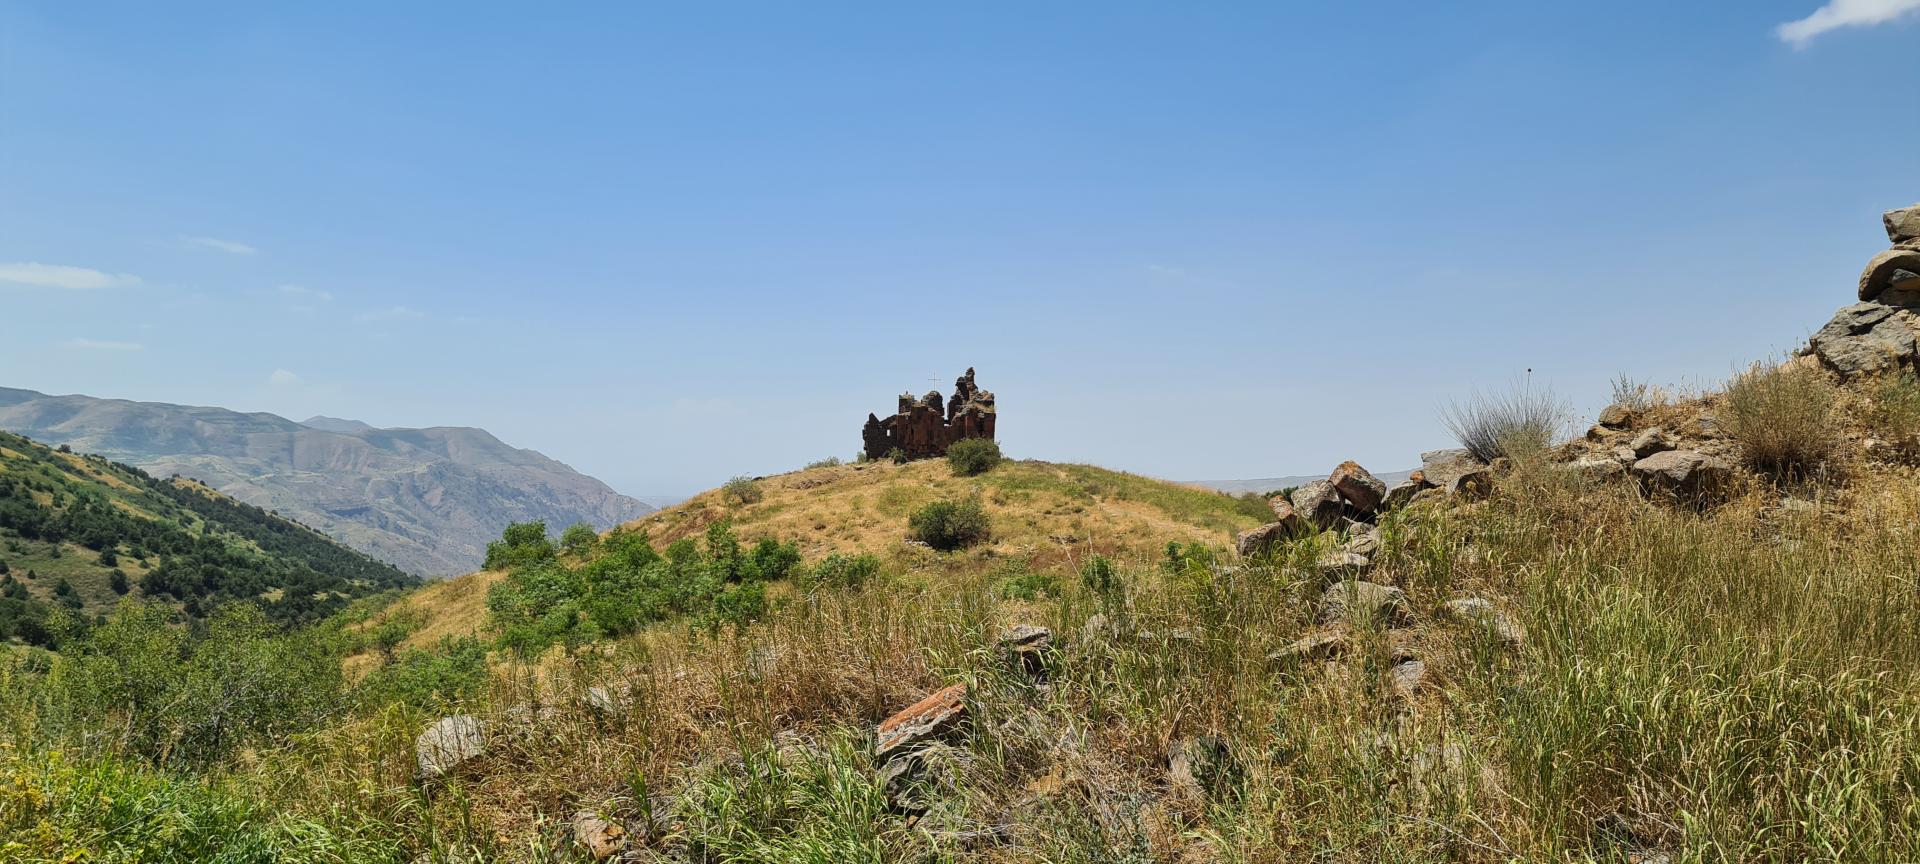 Havuts Tar Monastery